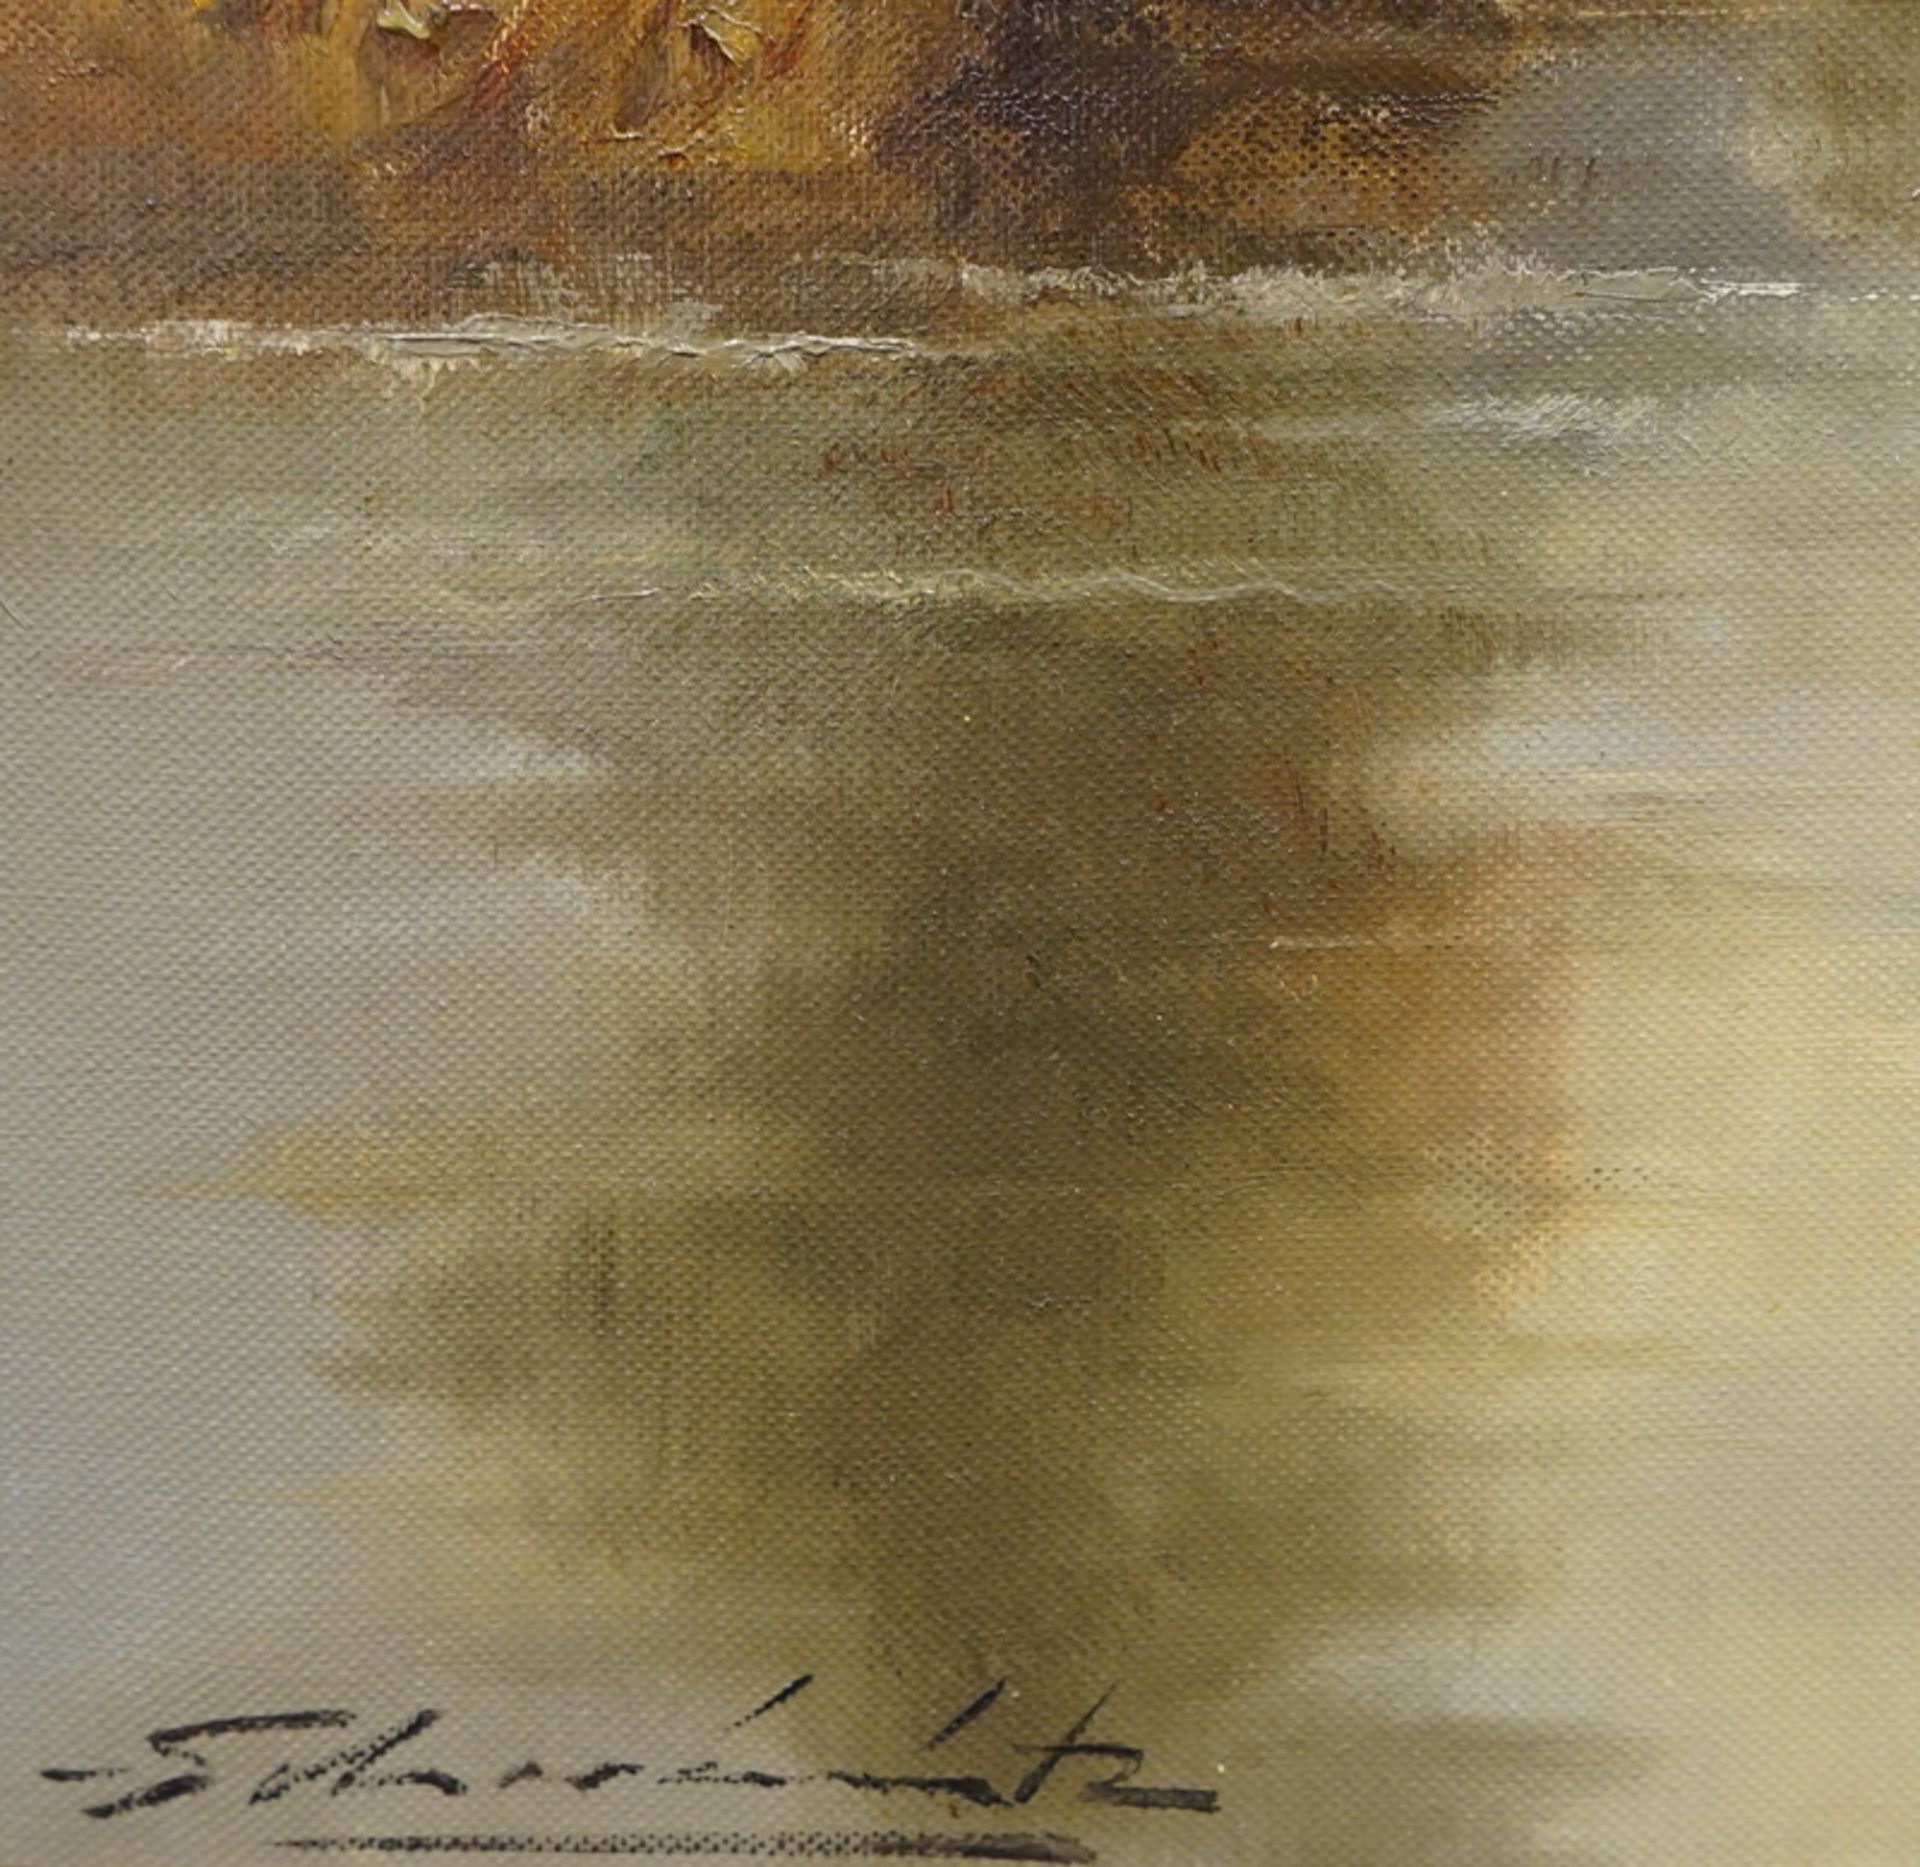 Gemälde "Bauerndorf am Fluss", Öl auf Leinwand, 20. Jhd. - Bild 3 aus 4